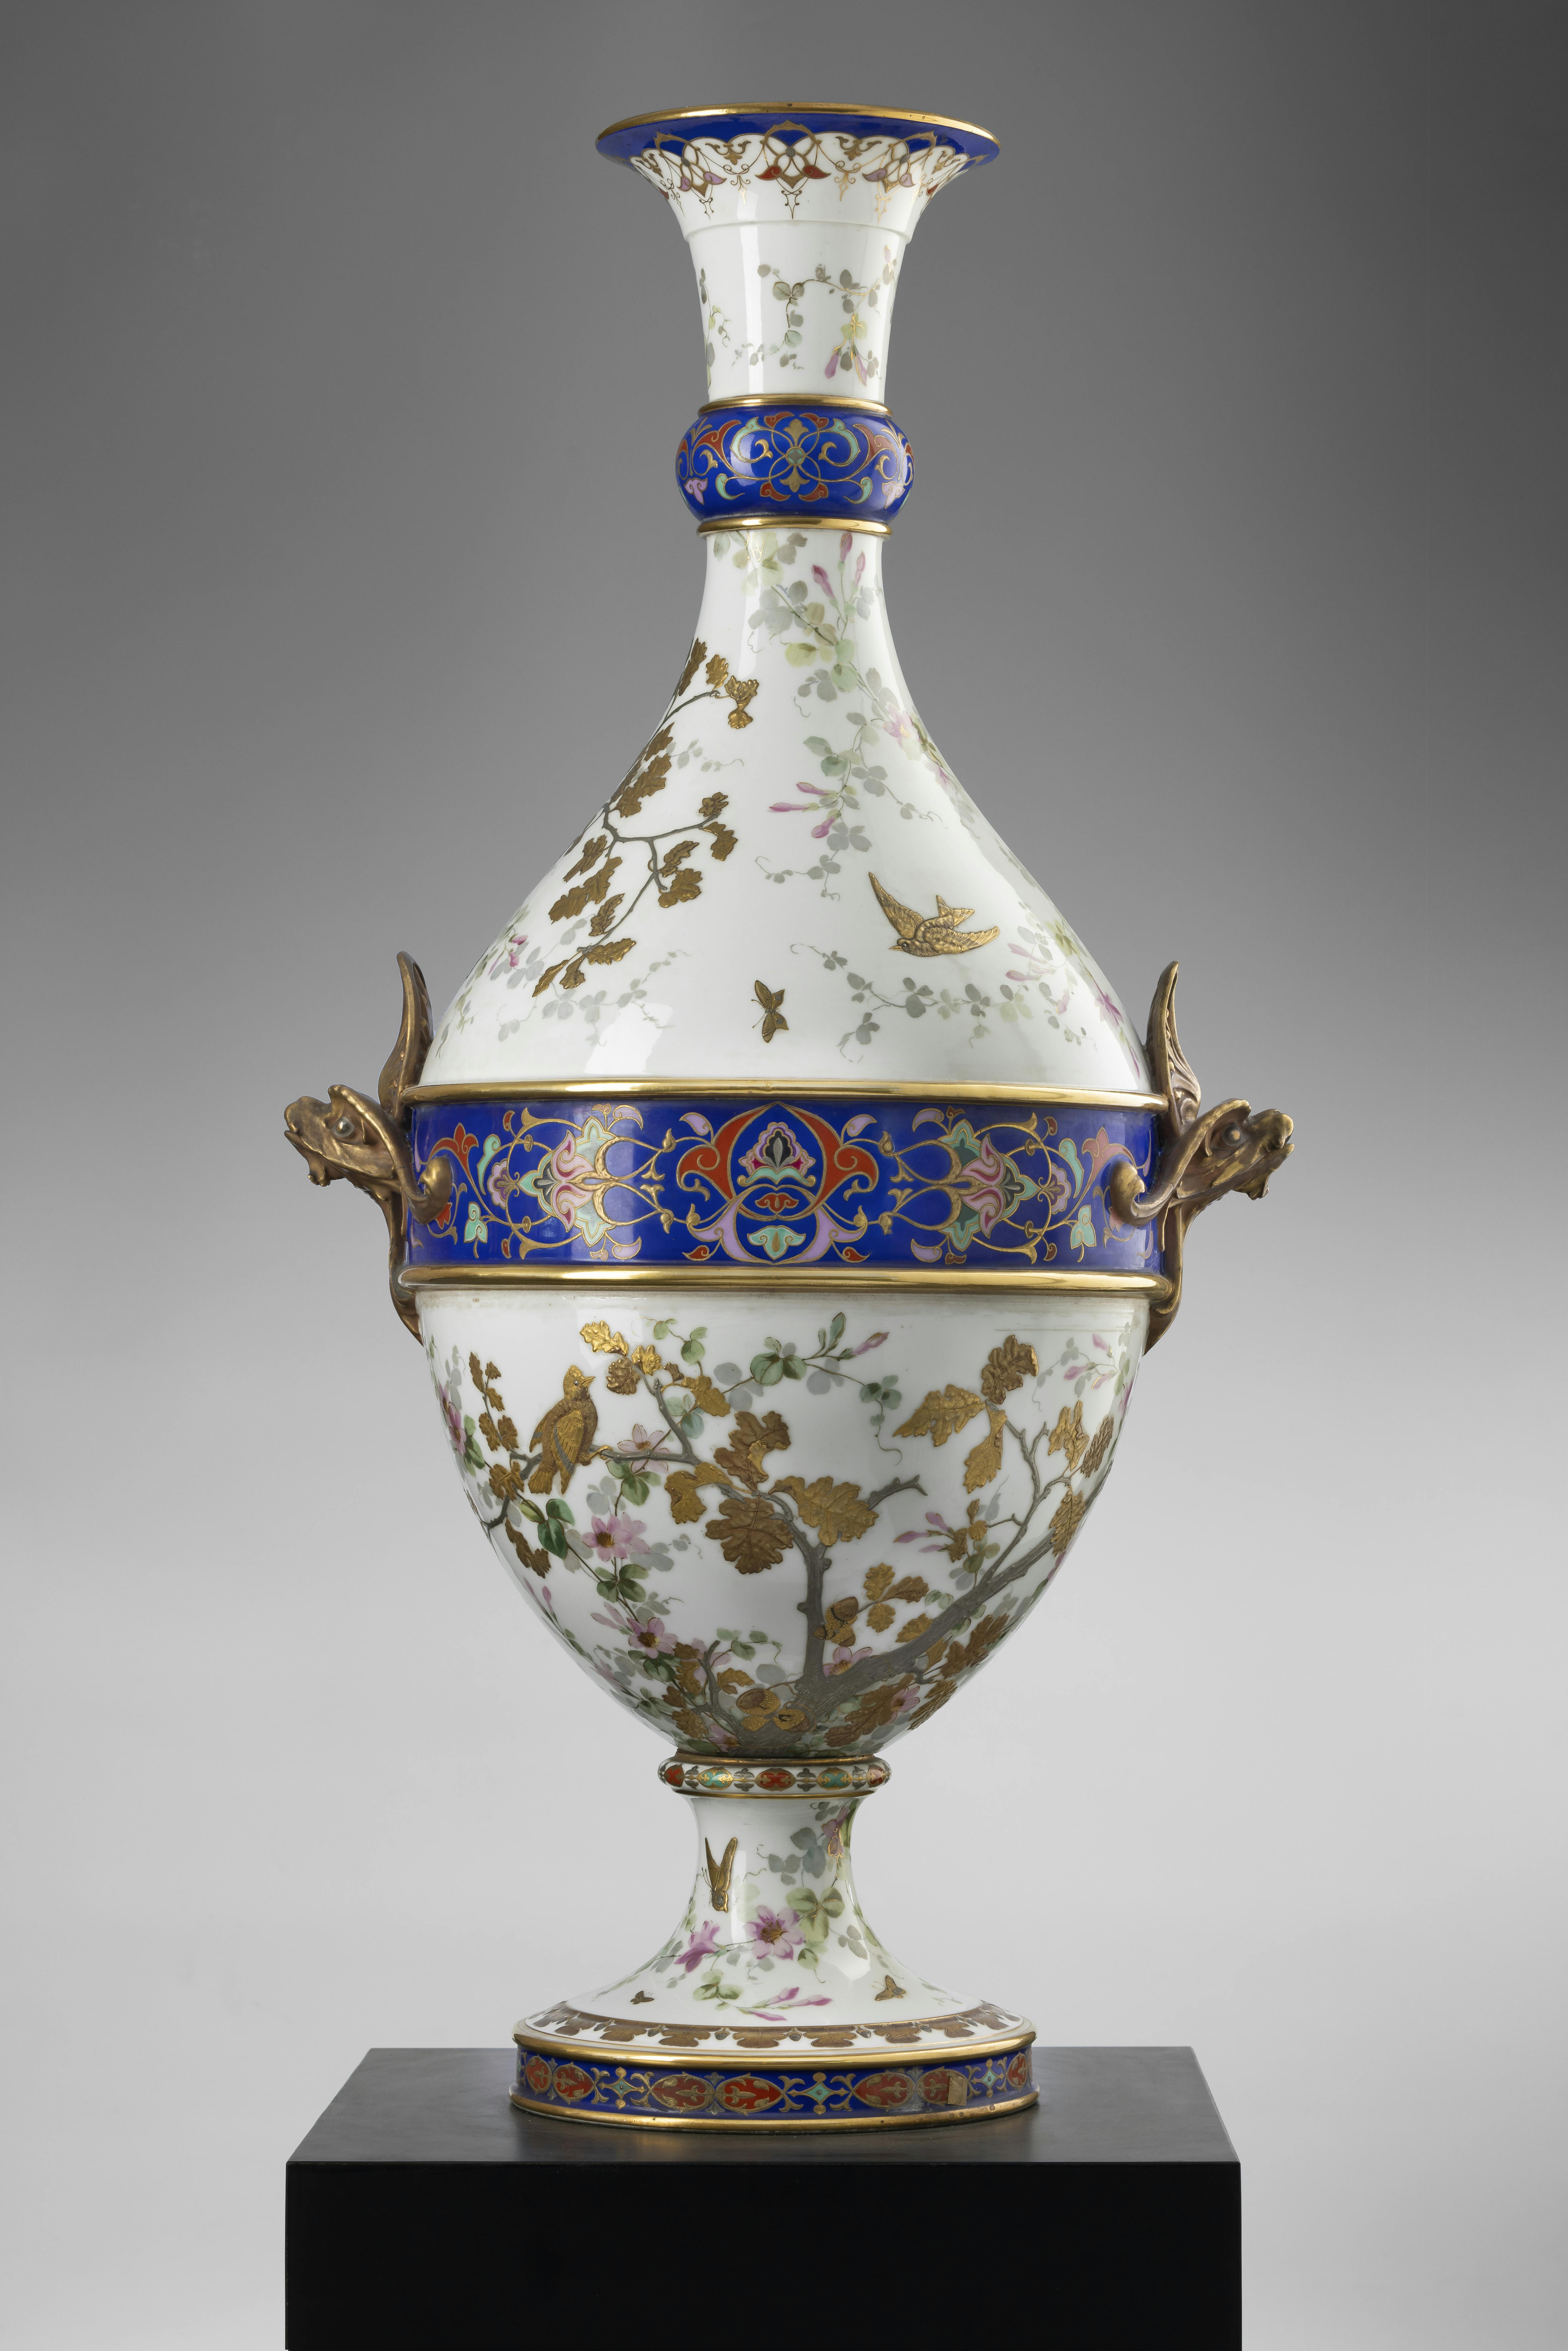 Grande vaso in porcellana bianca decorato con rami fioriti dorati